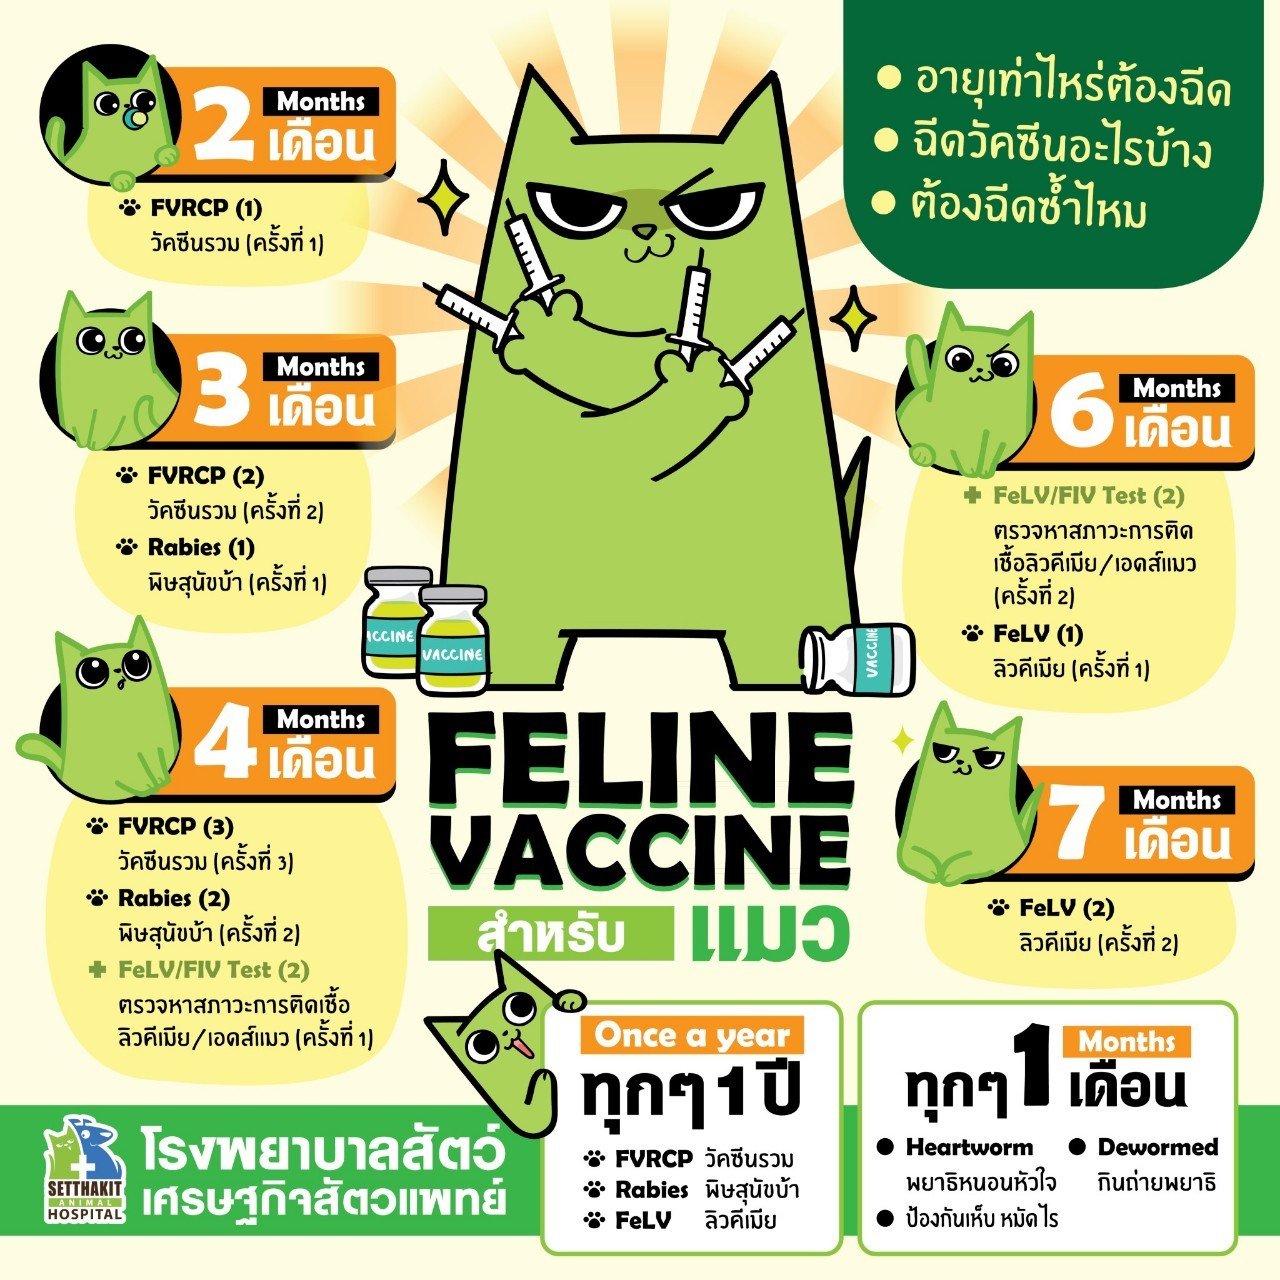 วัคซีนรวม 5 โรคแมวมีอะไรบ้าง